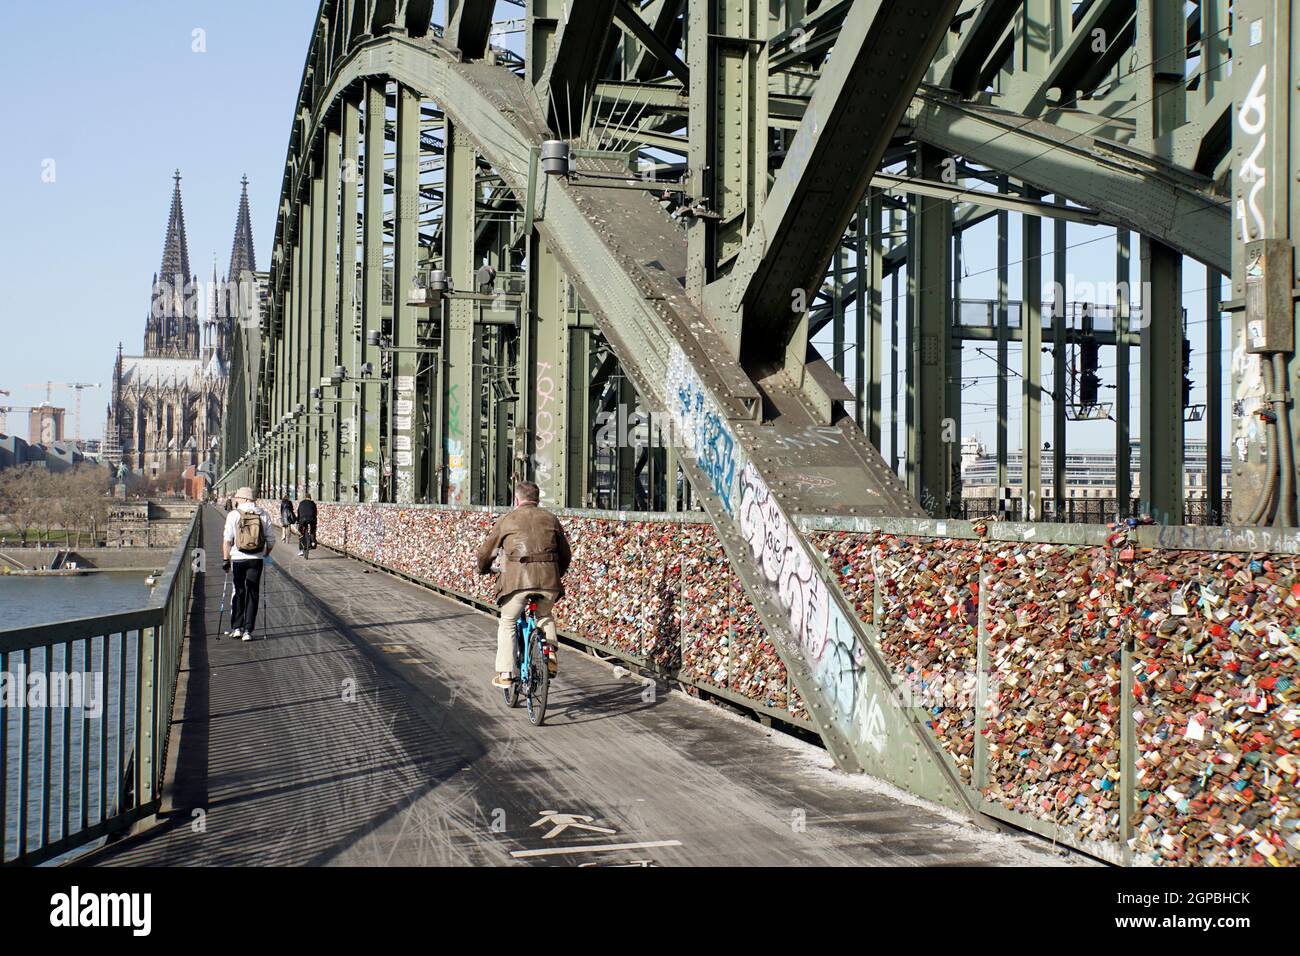 Touristenattraktion Liebsesschlösser auf der Hohenzollernbrücke, fast menschenleer während der Covid 19-Pandemie, Deutschland, Nordrhein-Westfalen, Kö Stock Photo